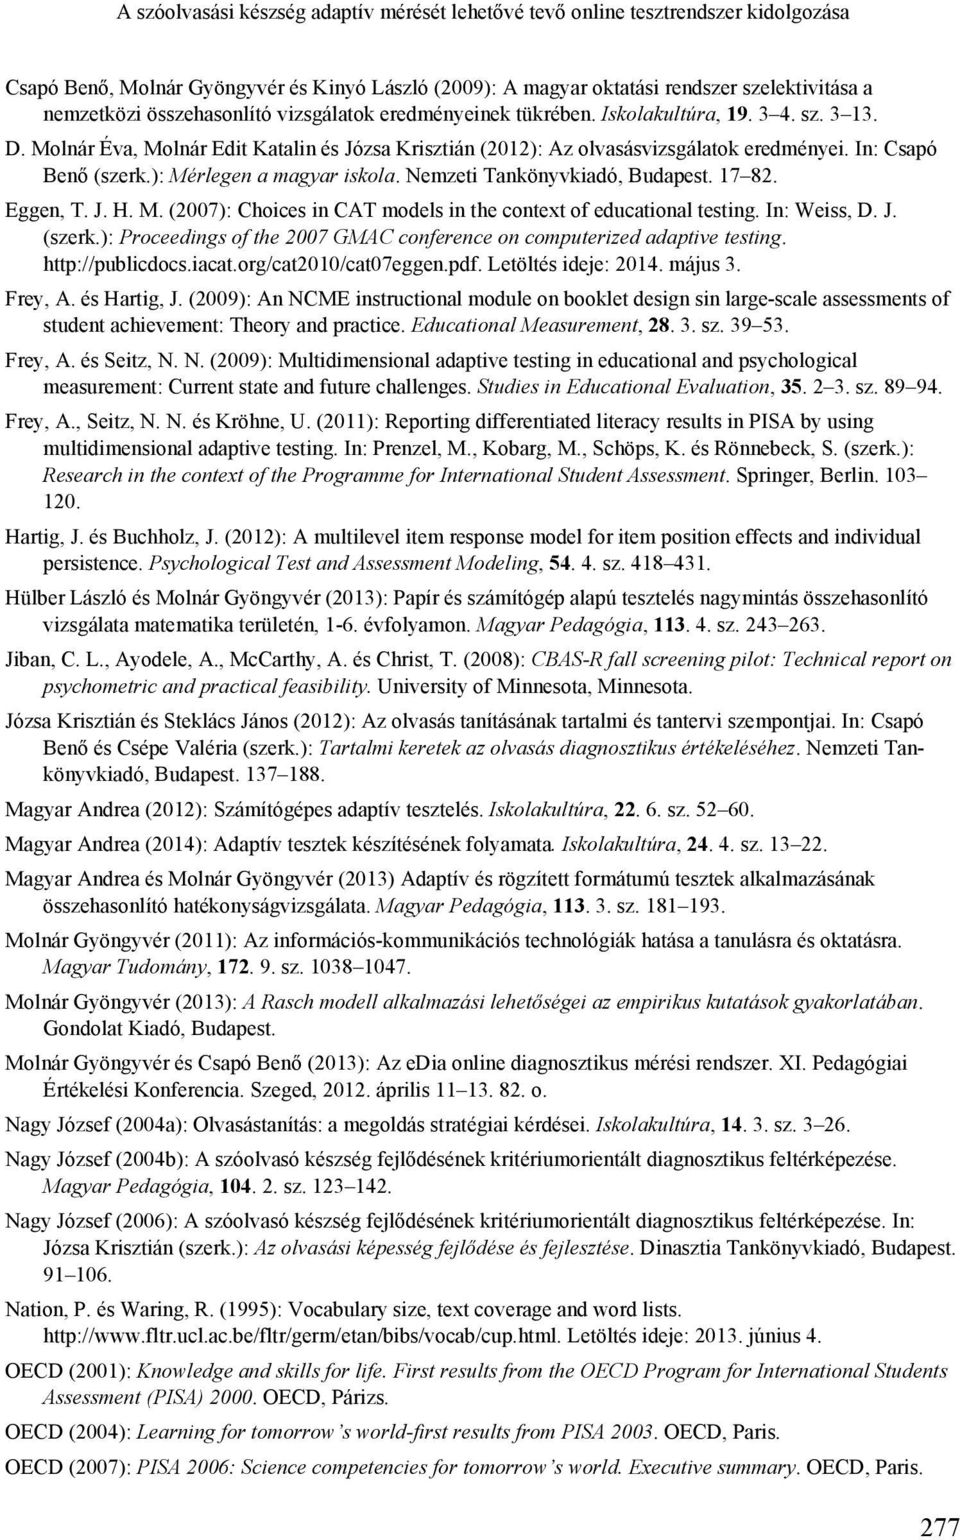 In: Csapó Benő (szerk.): Mérlegen a magyar iskola. Nemzeti Tankönyvkiadó, Budapest. 17 82. Eggen, T. J. H. M. (2007): Choices in CAT models in the context of educational testing. In: Weiss, D. J. (szerk.): Proceedings of the 2007 GMAC conference on computerized adaptive testing.